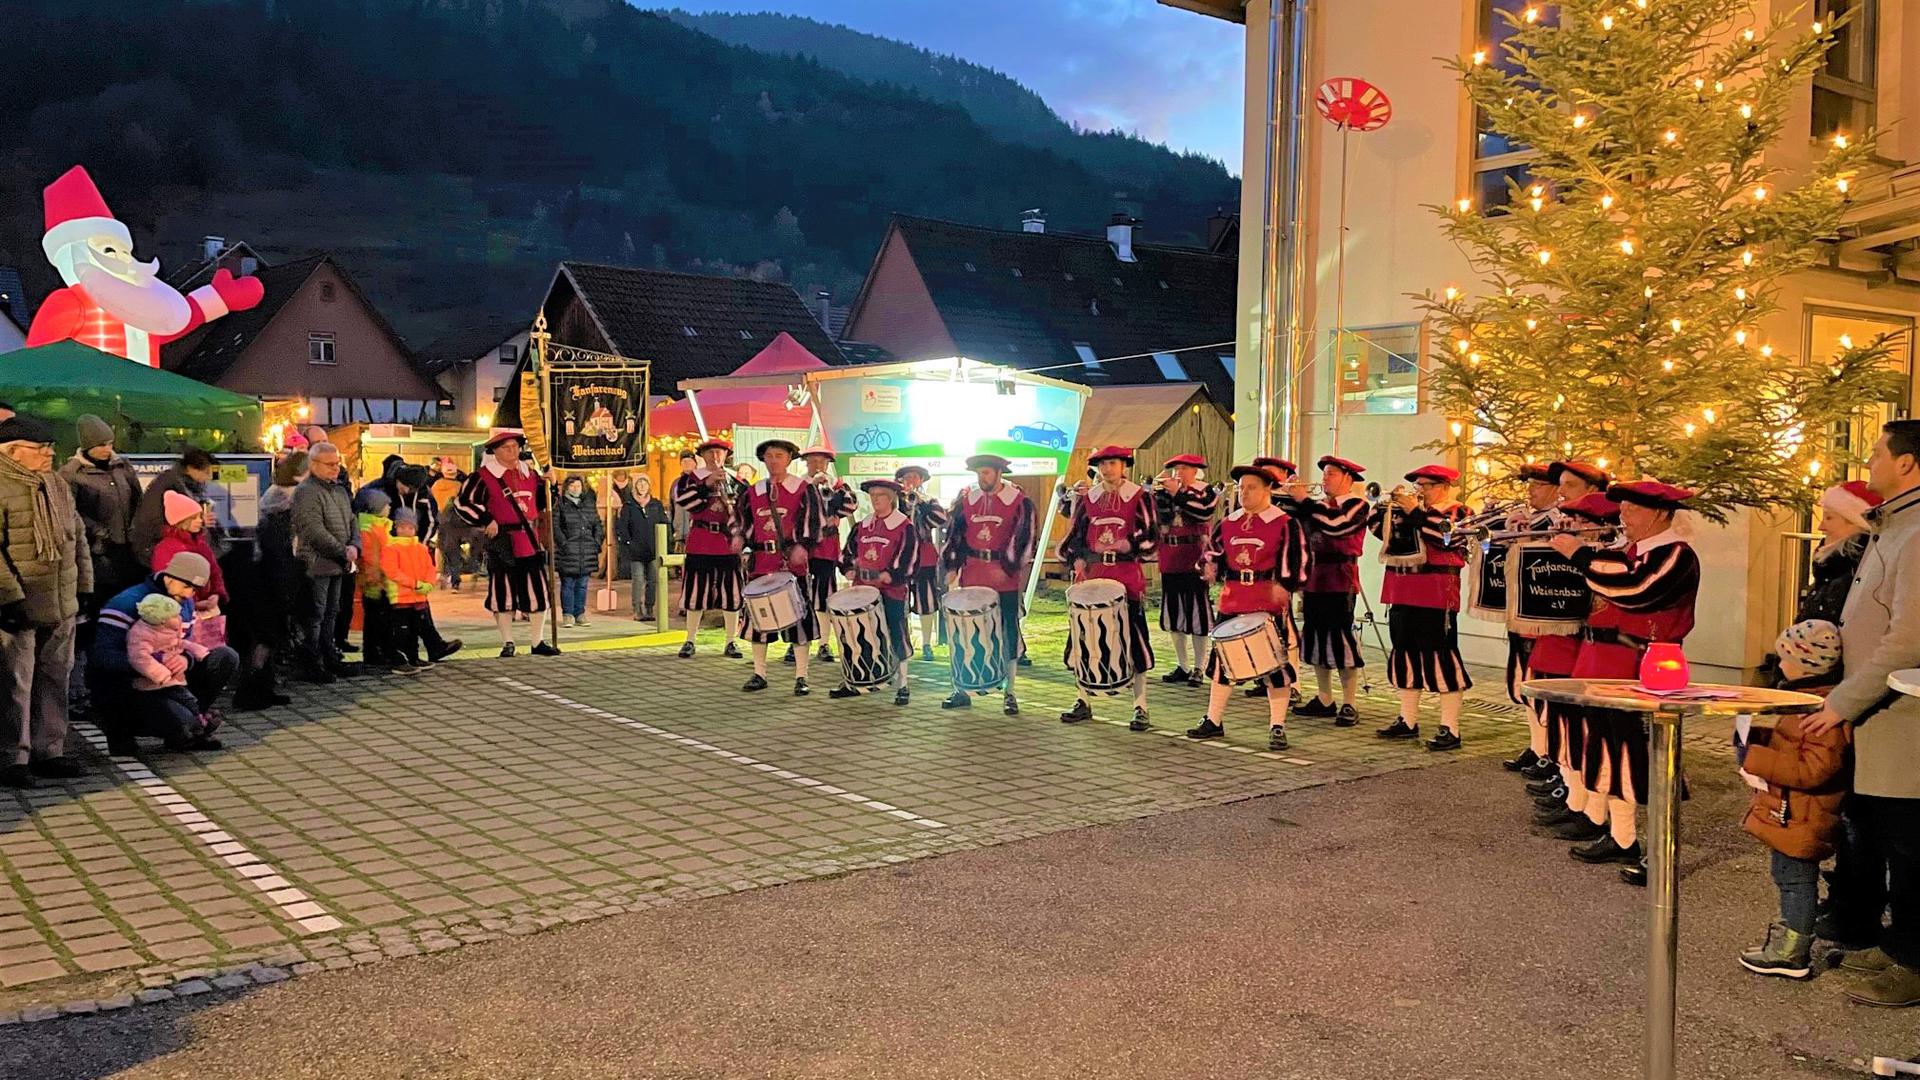 Feierliche Eröffnung: Der Fanfarenzug Weisenbach sorgt mit seinem Trommelspiel für einen gelungenen Auftakt beim Weisenbacher Weihnachtsmarkt.